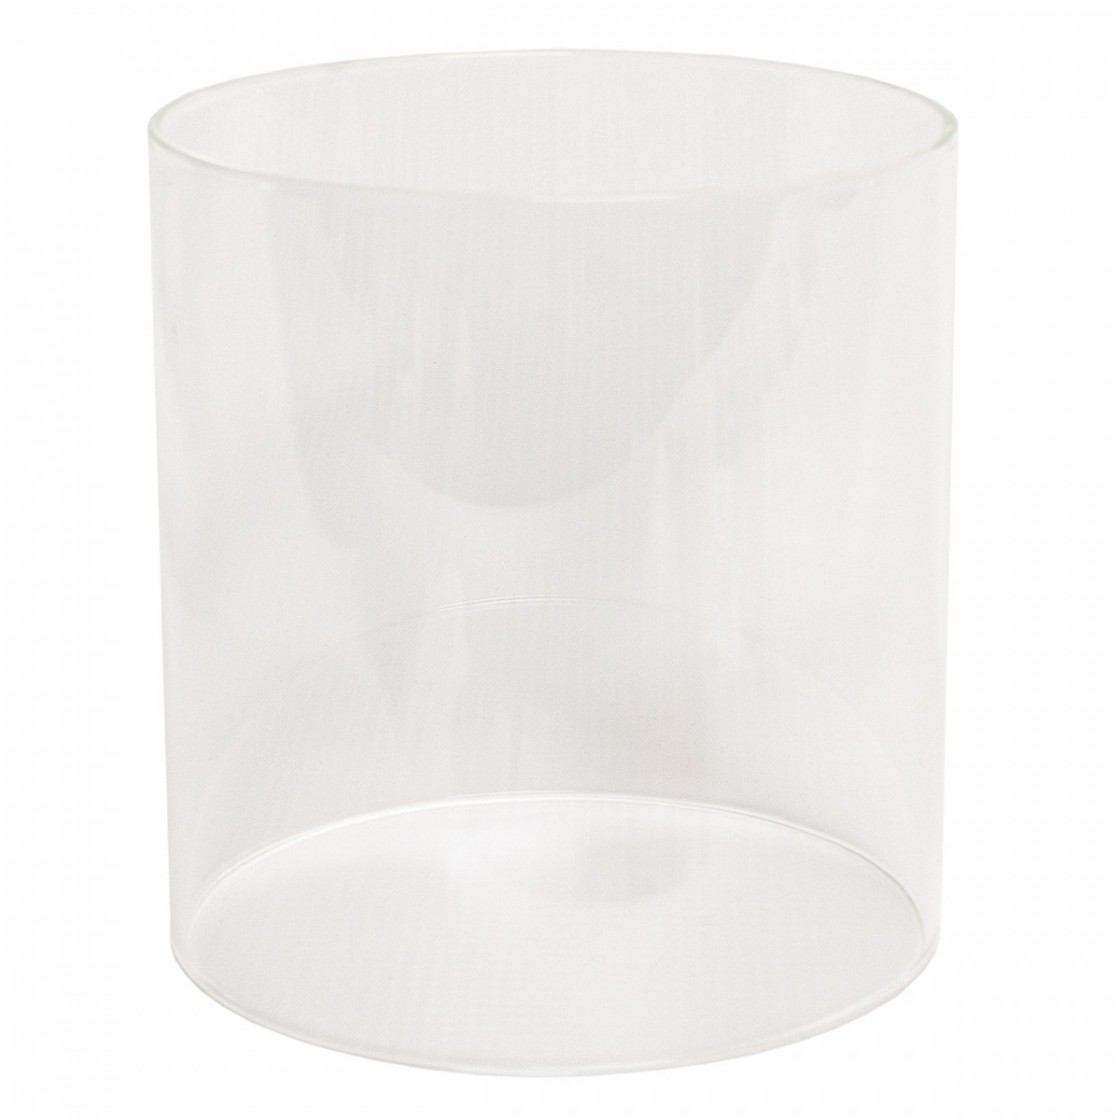 Lantern Replacement Glass | KUMA™ Outdoor Gear